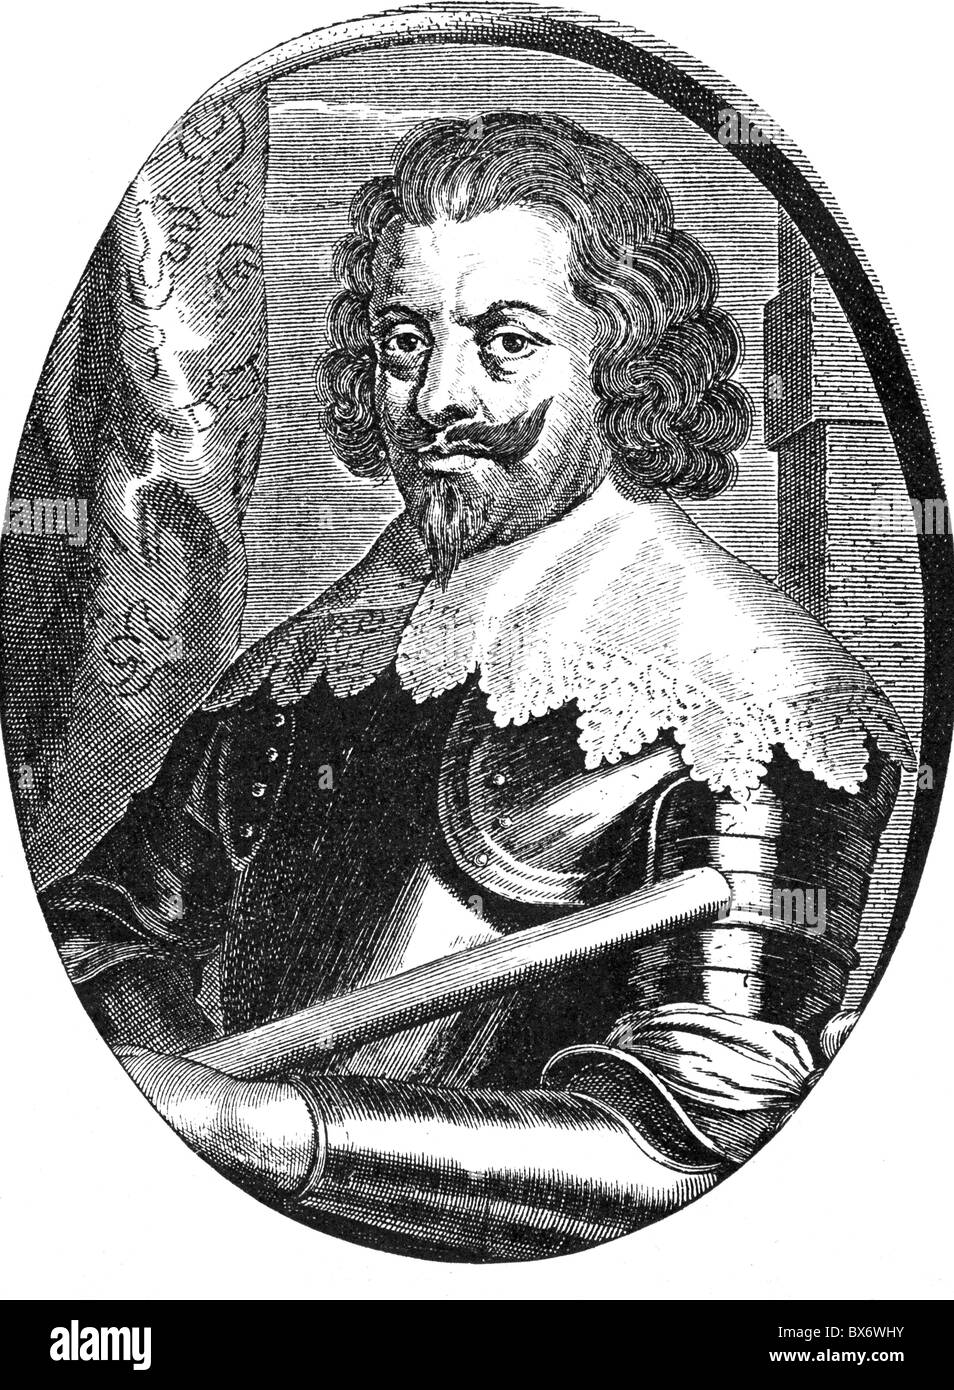 Werth, Johann von, vers 1595 - 16.9.1652, général impérial, demi-longueur, gravure sur cuivre par Pieter de Jode, 17. Jahrhundert, , n'a pas d'auteur de l'artiste pour être effacé Banque D'Images